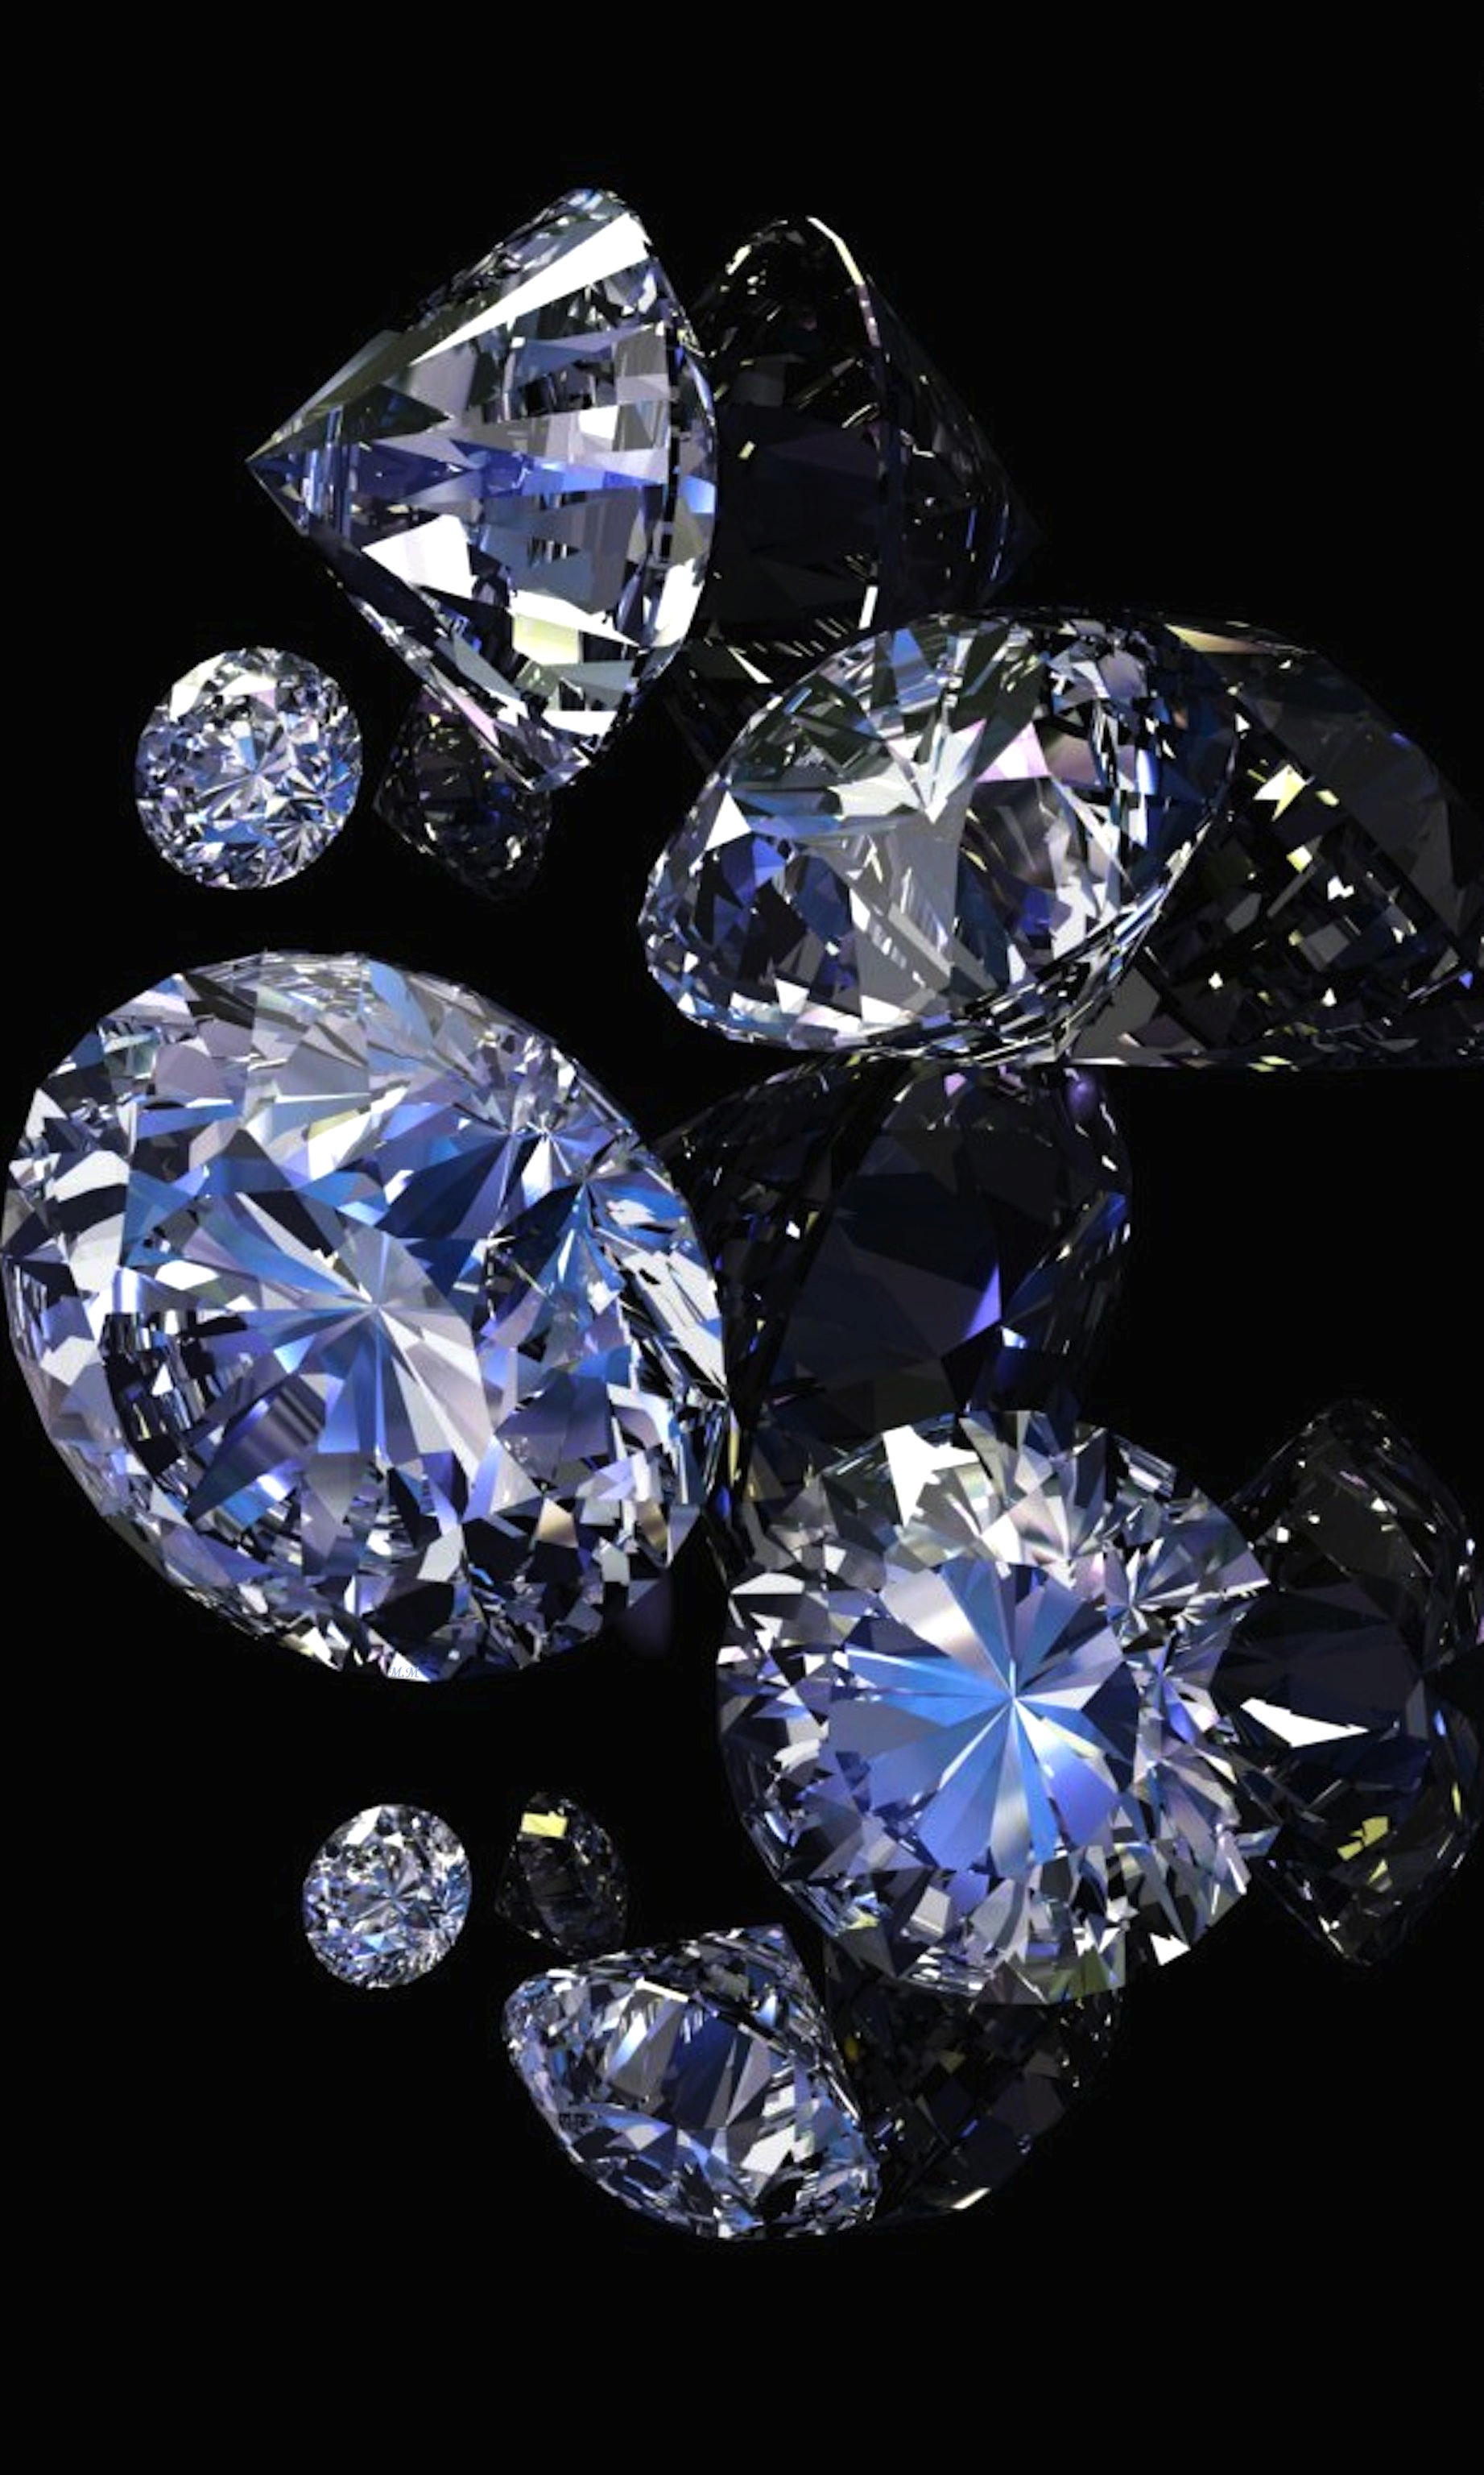 다이아몬드 벽지 아이폰,푸른,다이아몬드,보석,짙은 청록색,결정